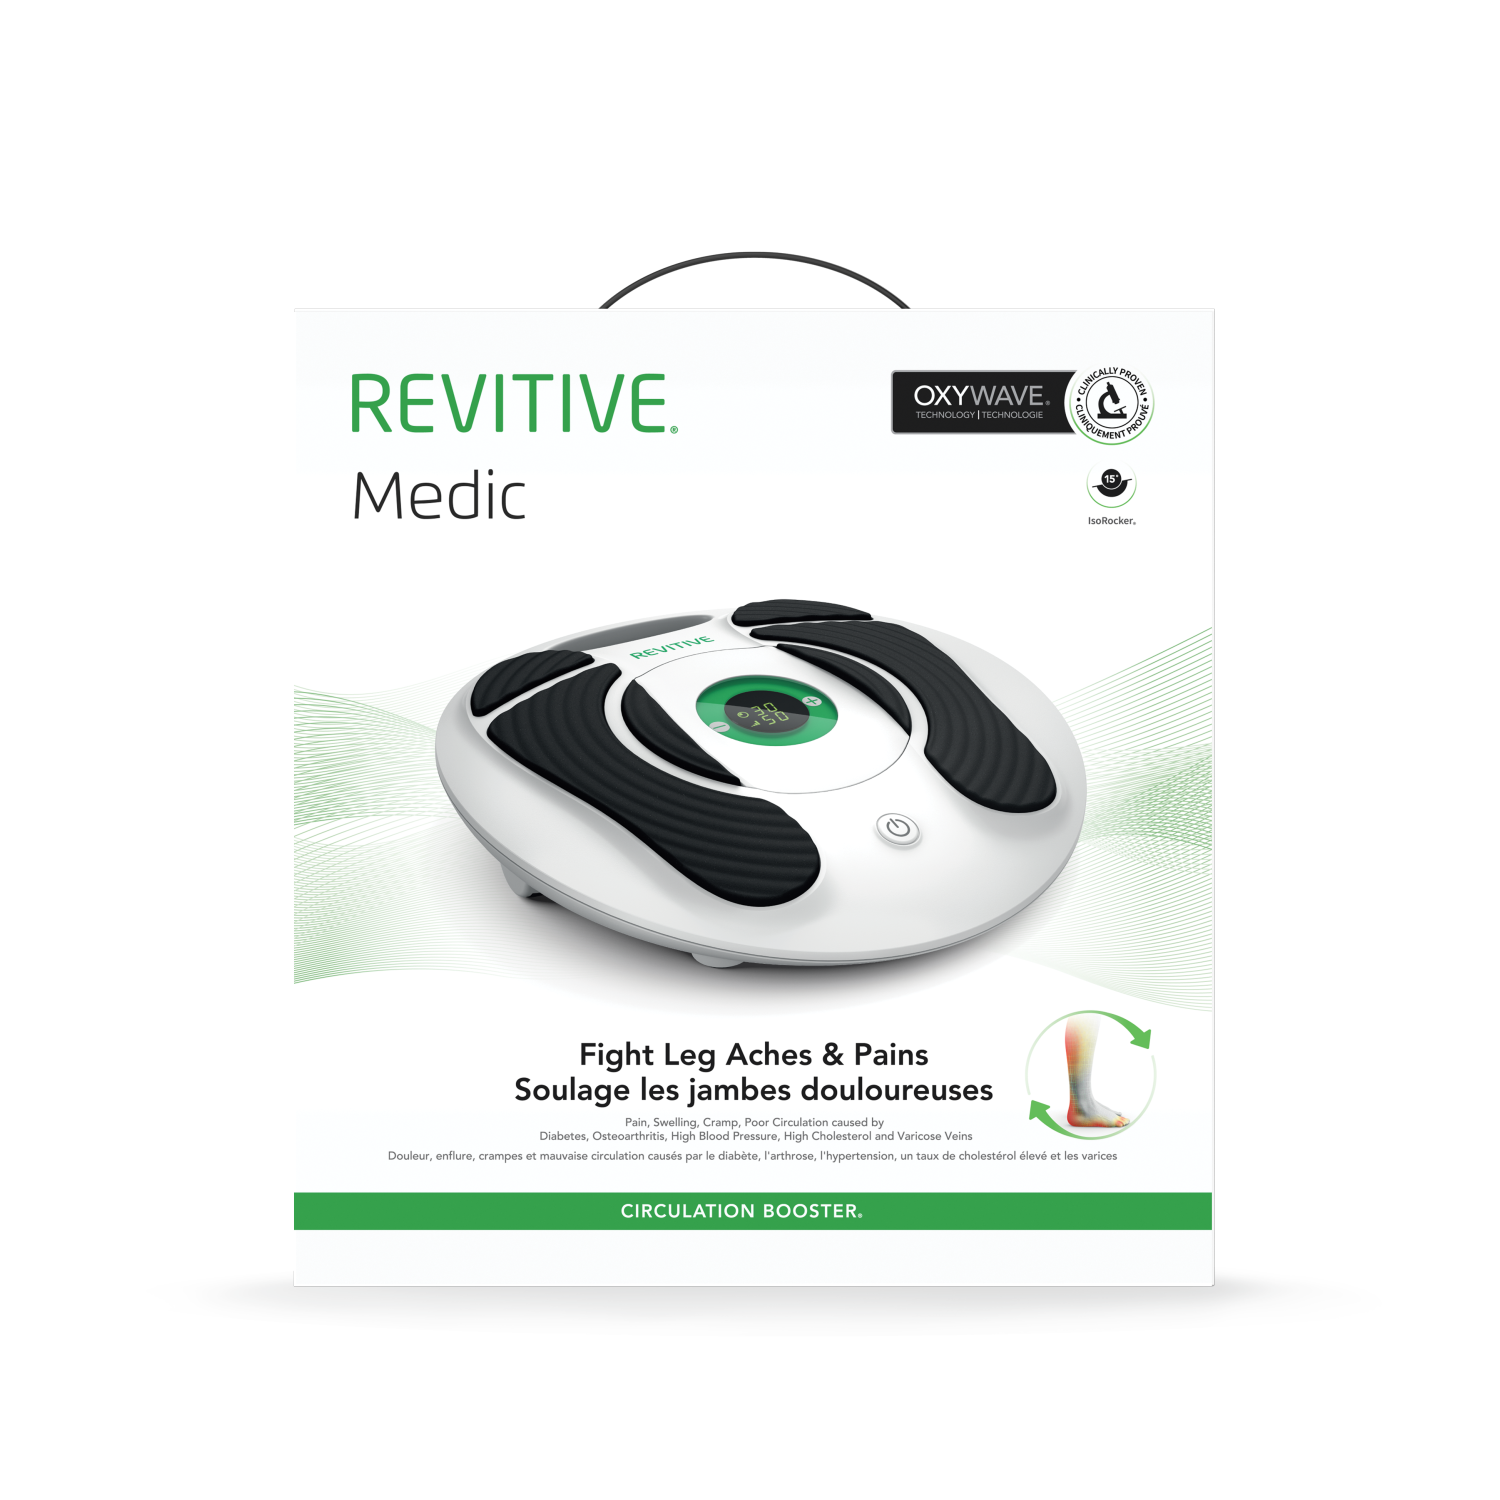 REVITIVE Medic Plus - Booster de circulation sanguine - sans fil - Achat &  prix